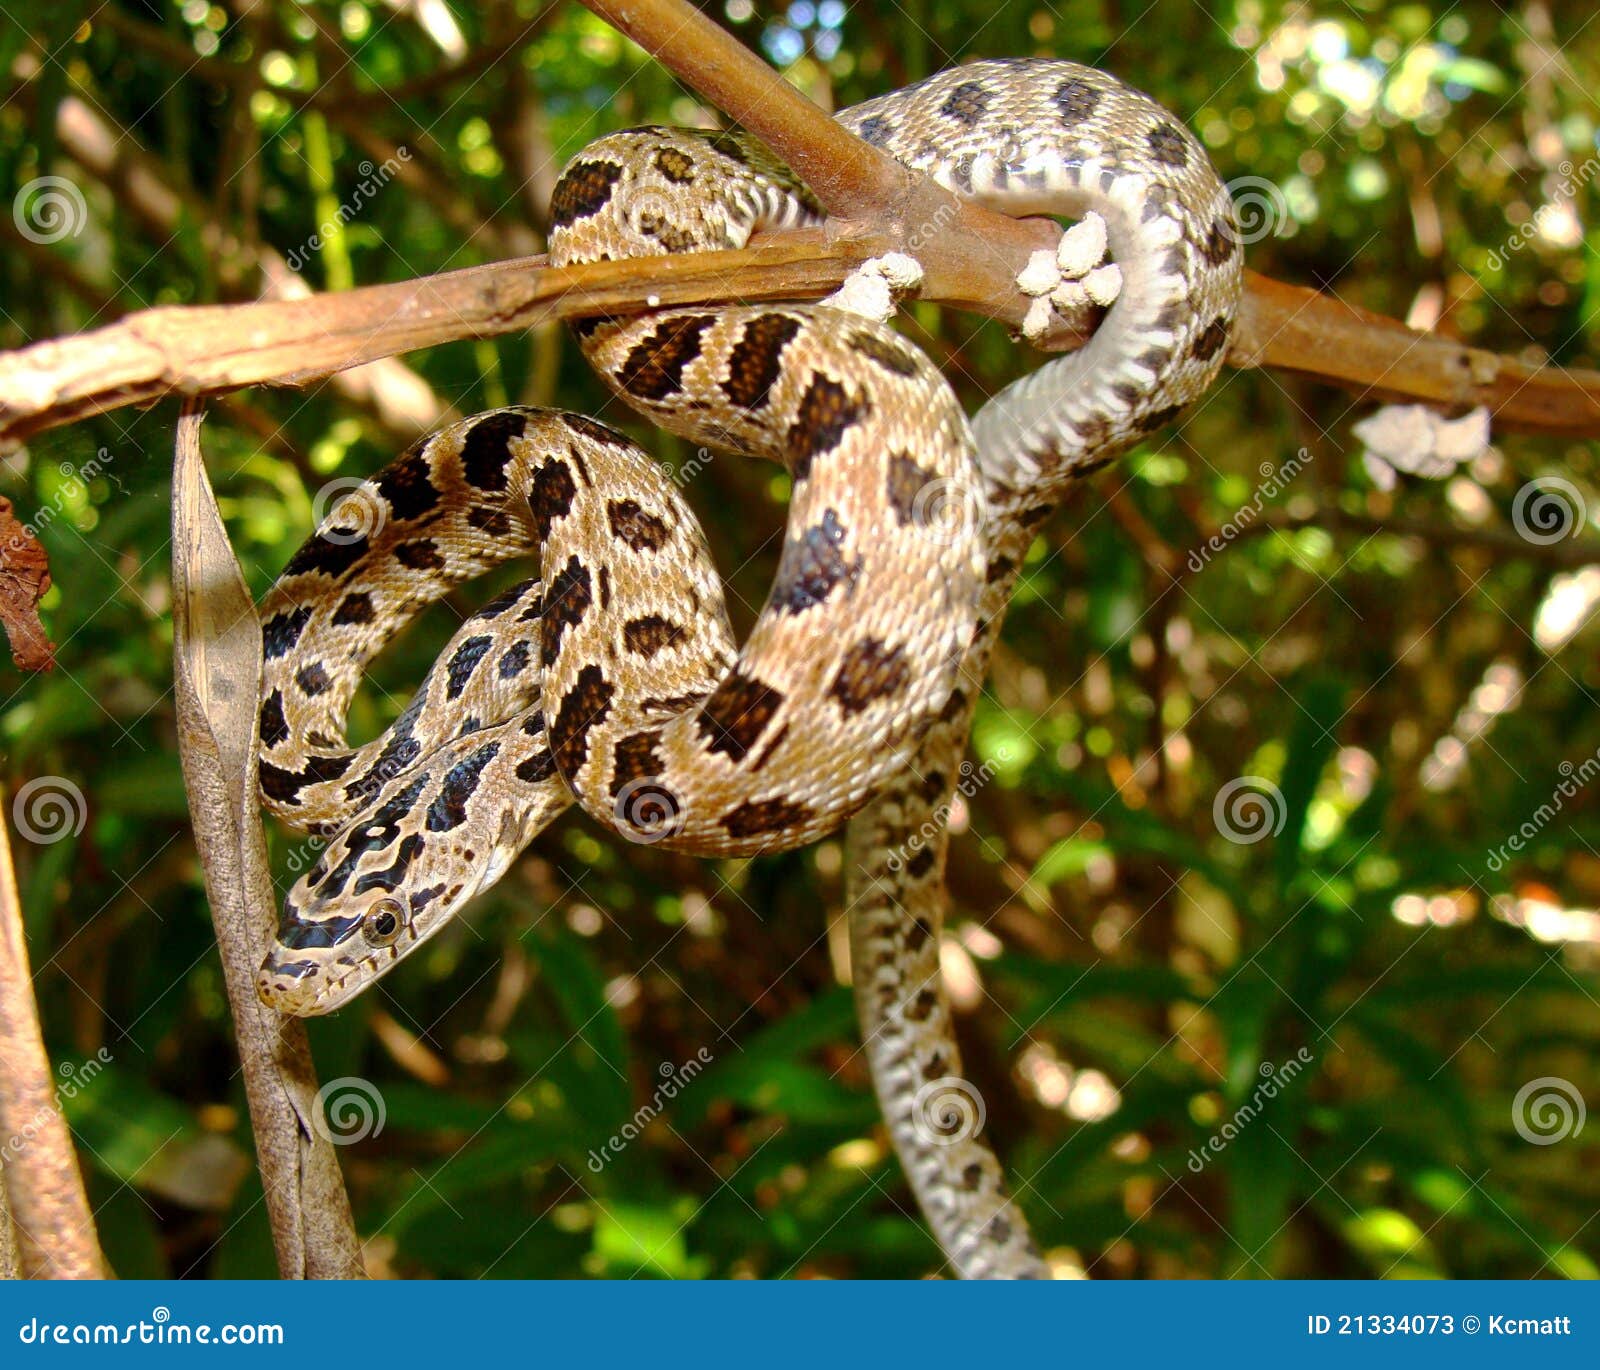 snake in a tree- peninsular (green) rat snake